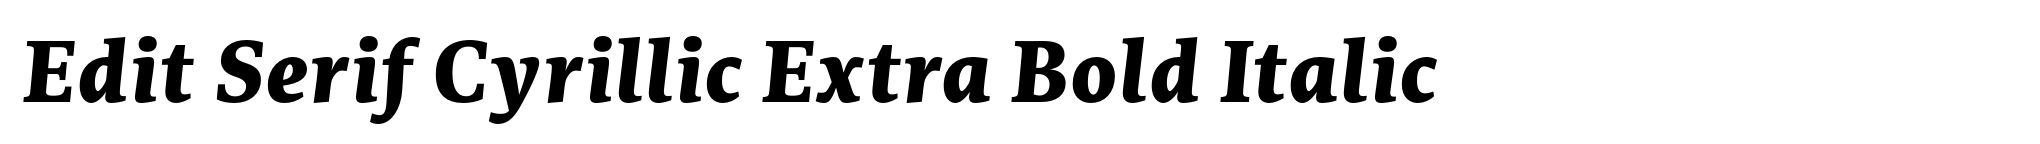 Edit Serif Cyrillic Extra Bold Italic image